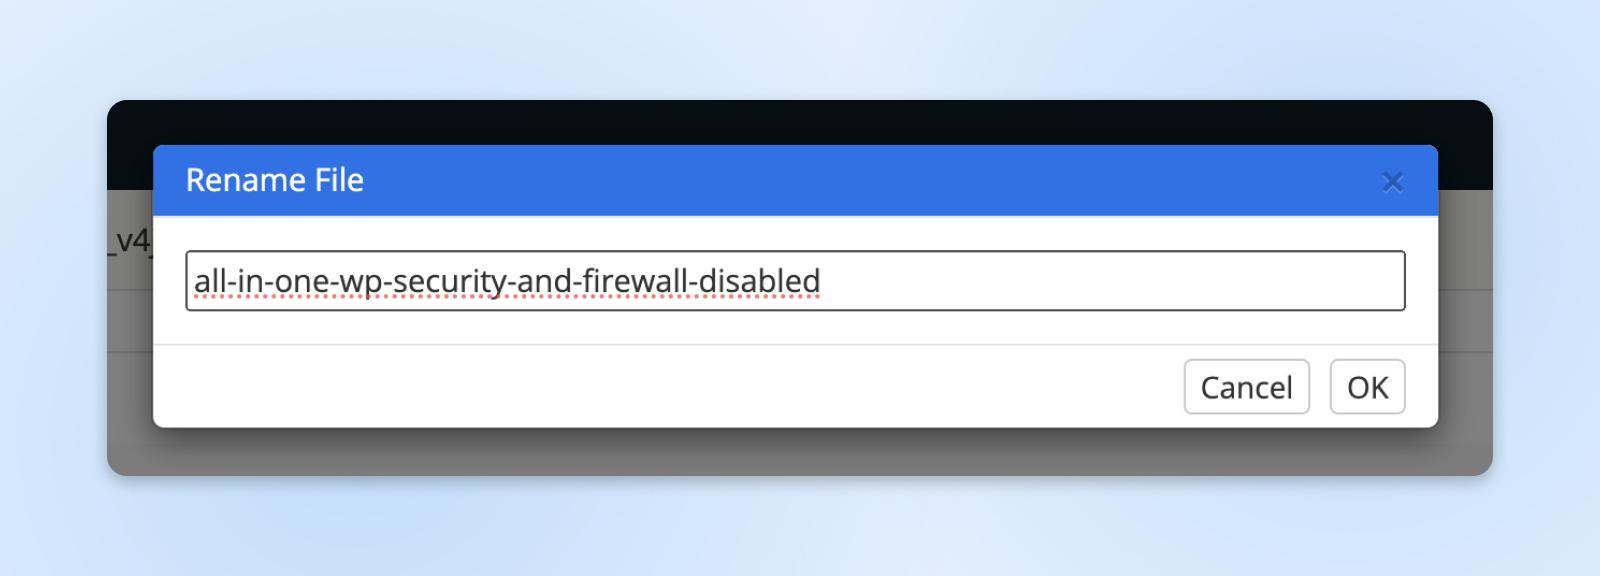 Cuadro de diálogo para cambiar el nombre de un archivo, con "all-in-one-wp-security-and-firewall-disabled" ingresado como nuevo nombre de archivo.